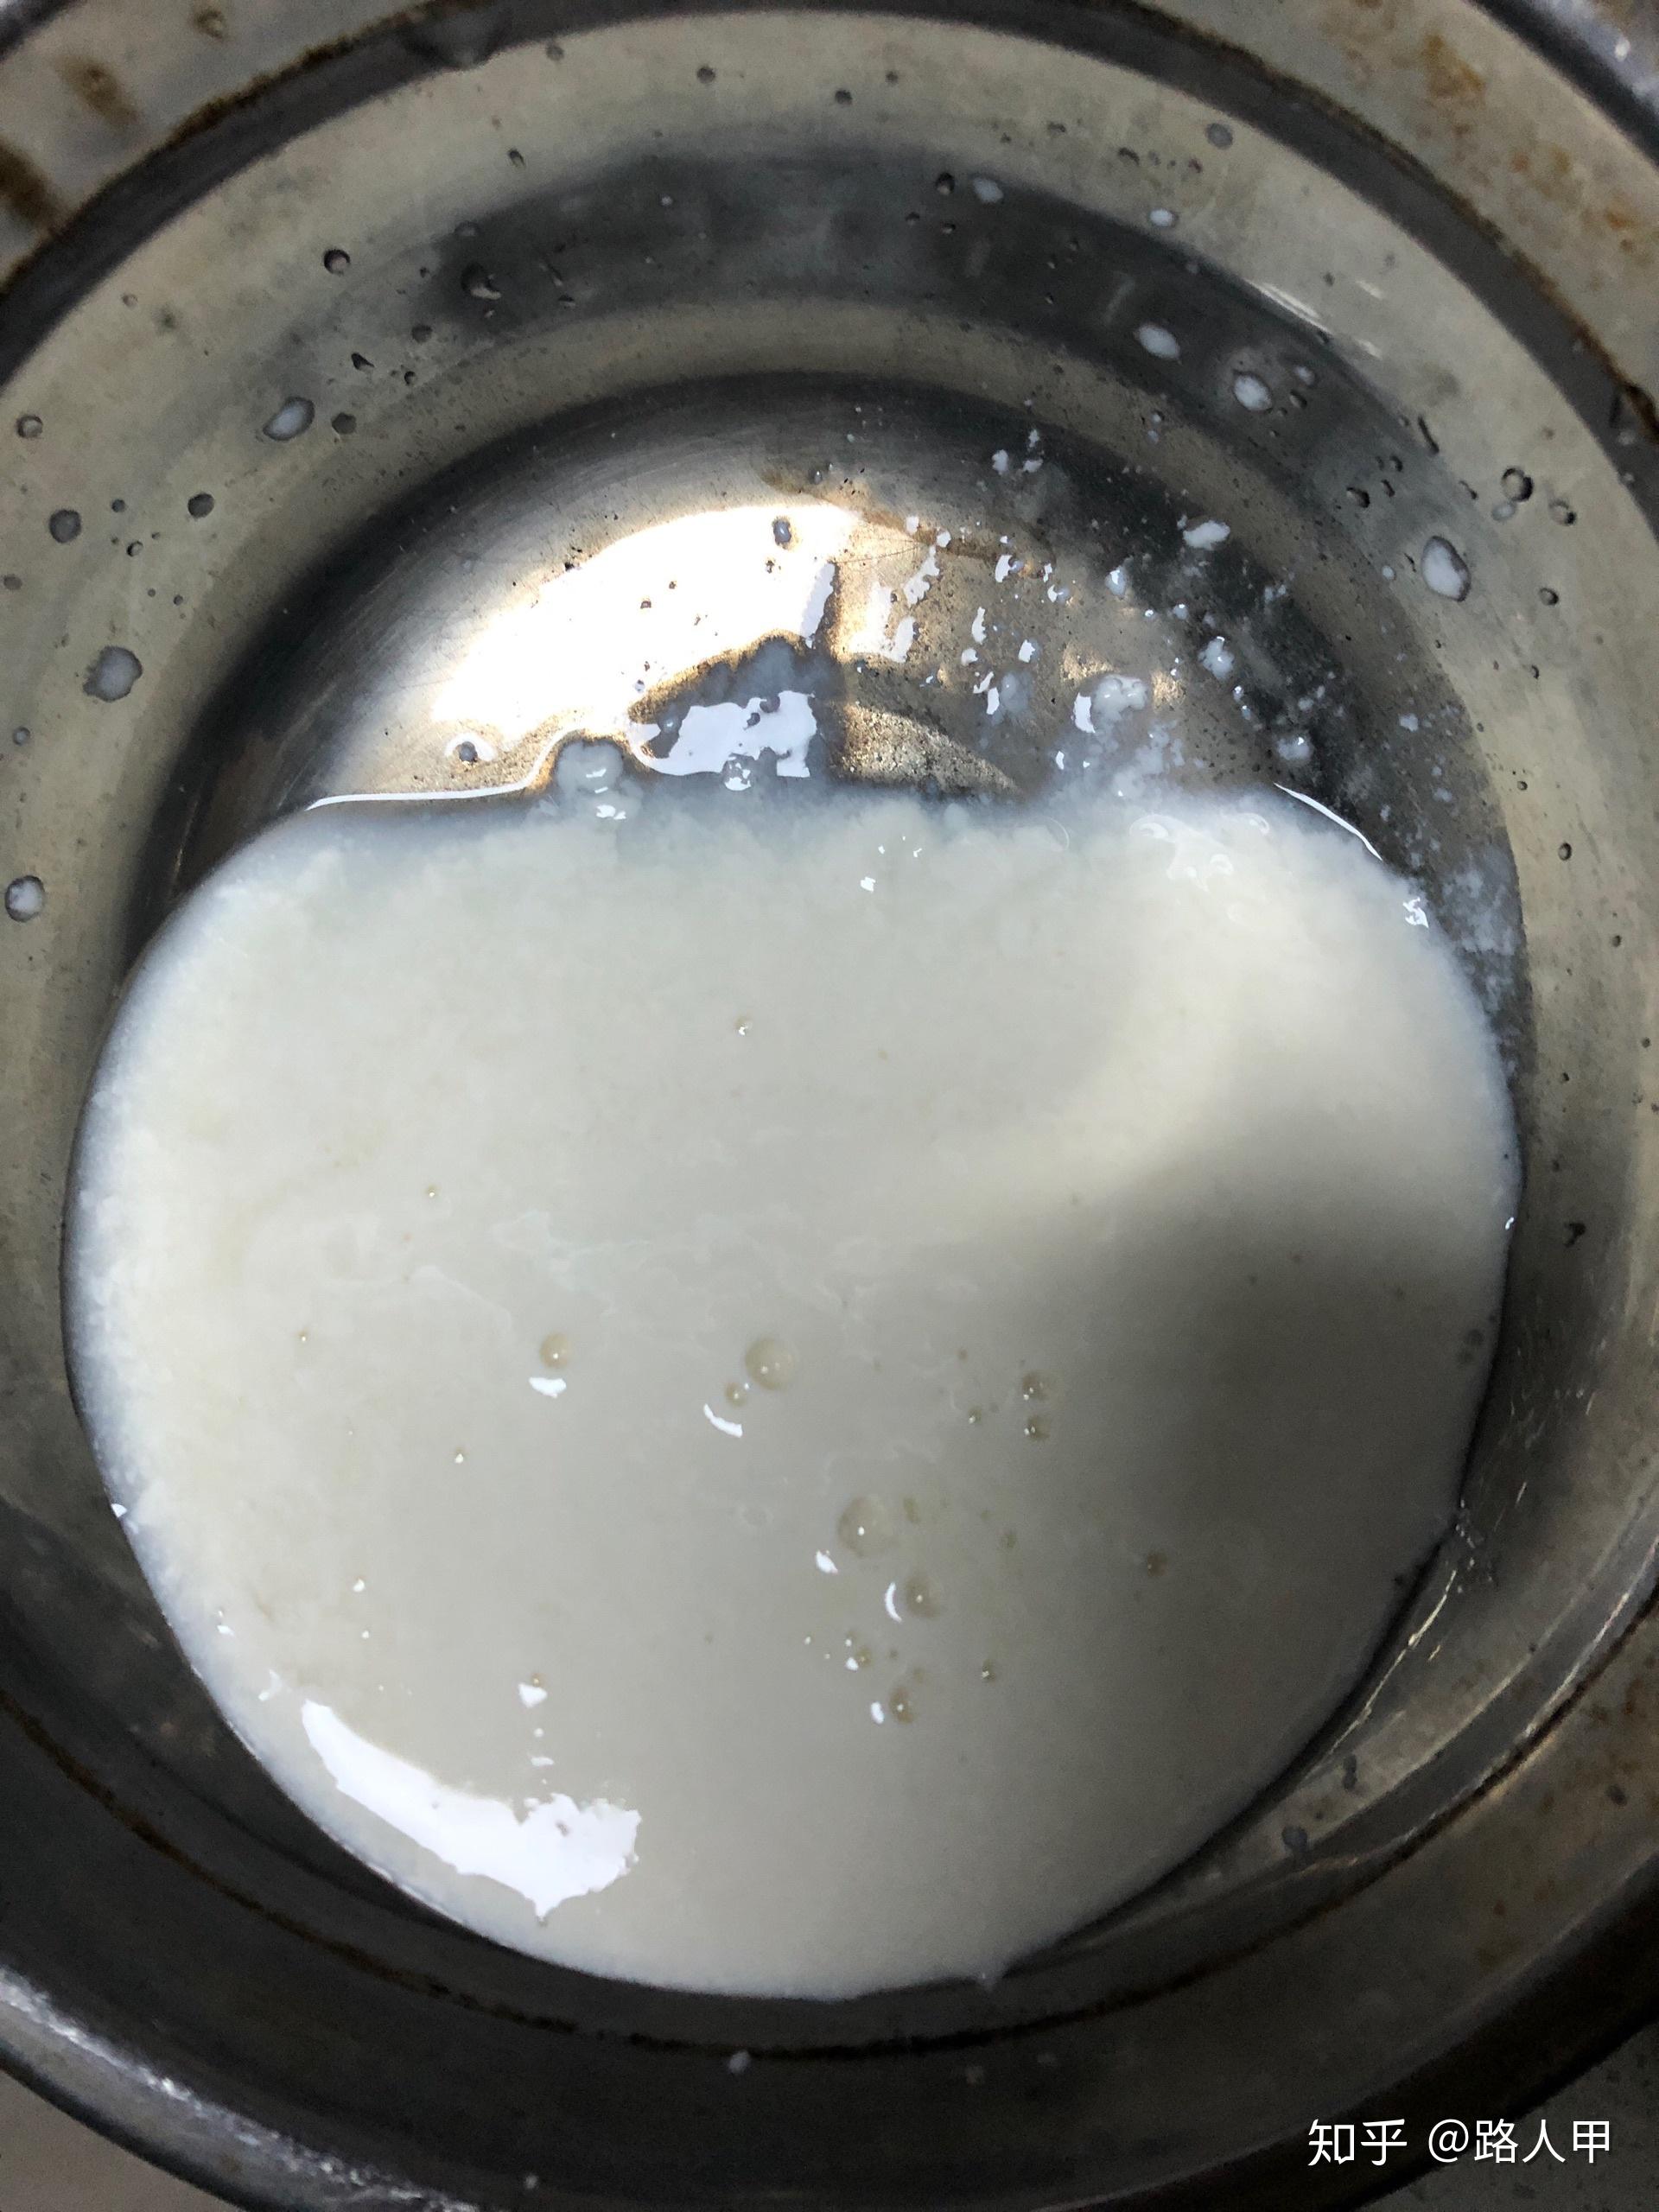 网购到变质牛奶无法维权云南腾冲槟榔江水牛纯奶